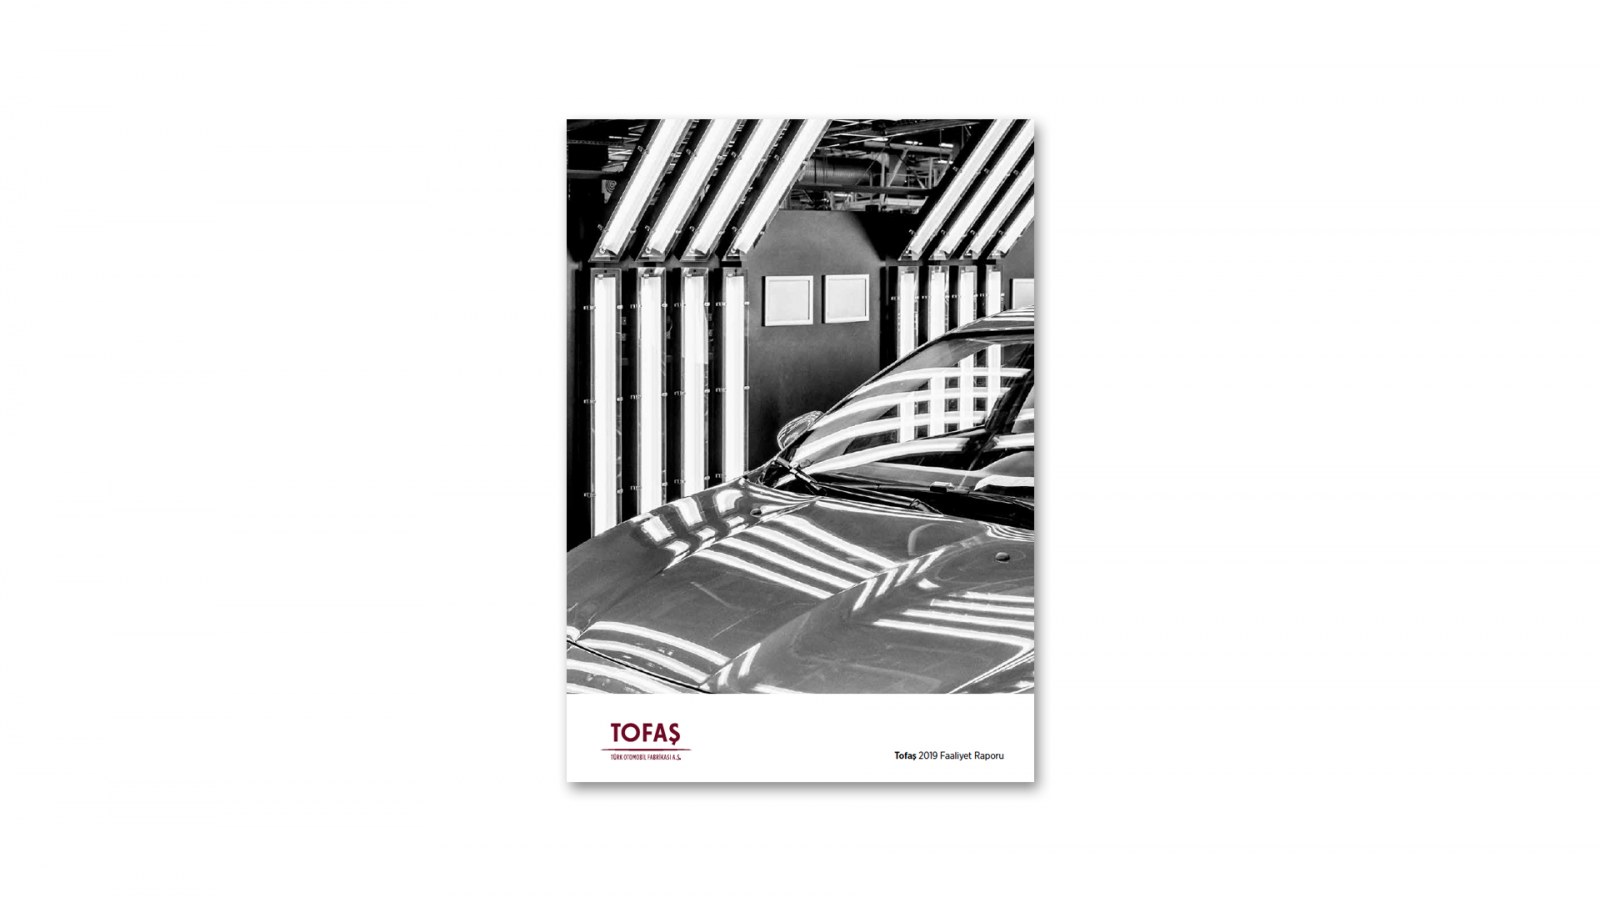 TOFAŞ / 2019 Faaliyet Raporu / 2019 Annual Report